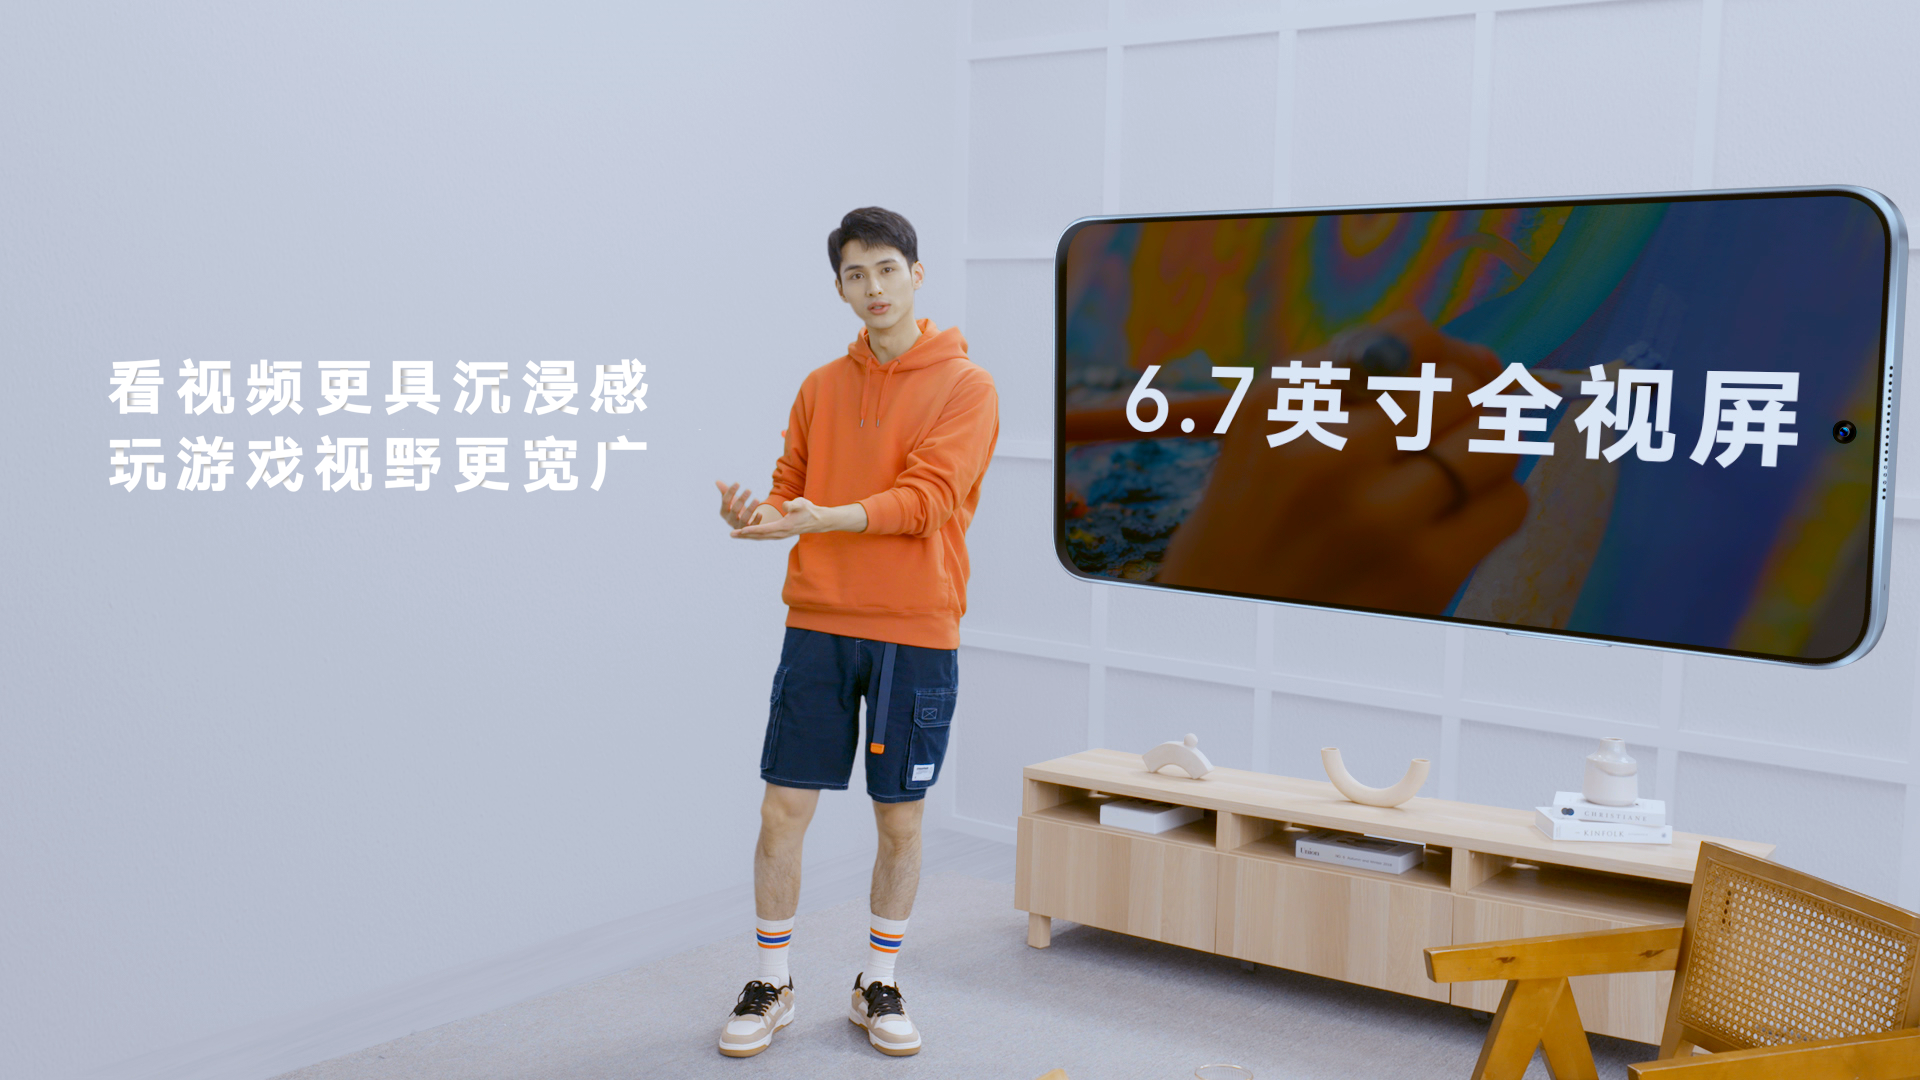 荣耀Play6T系列上市 将推动千元档5G大内存手机普及 智能公会